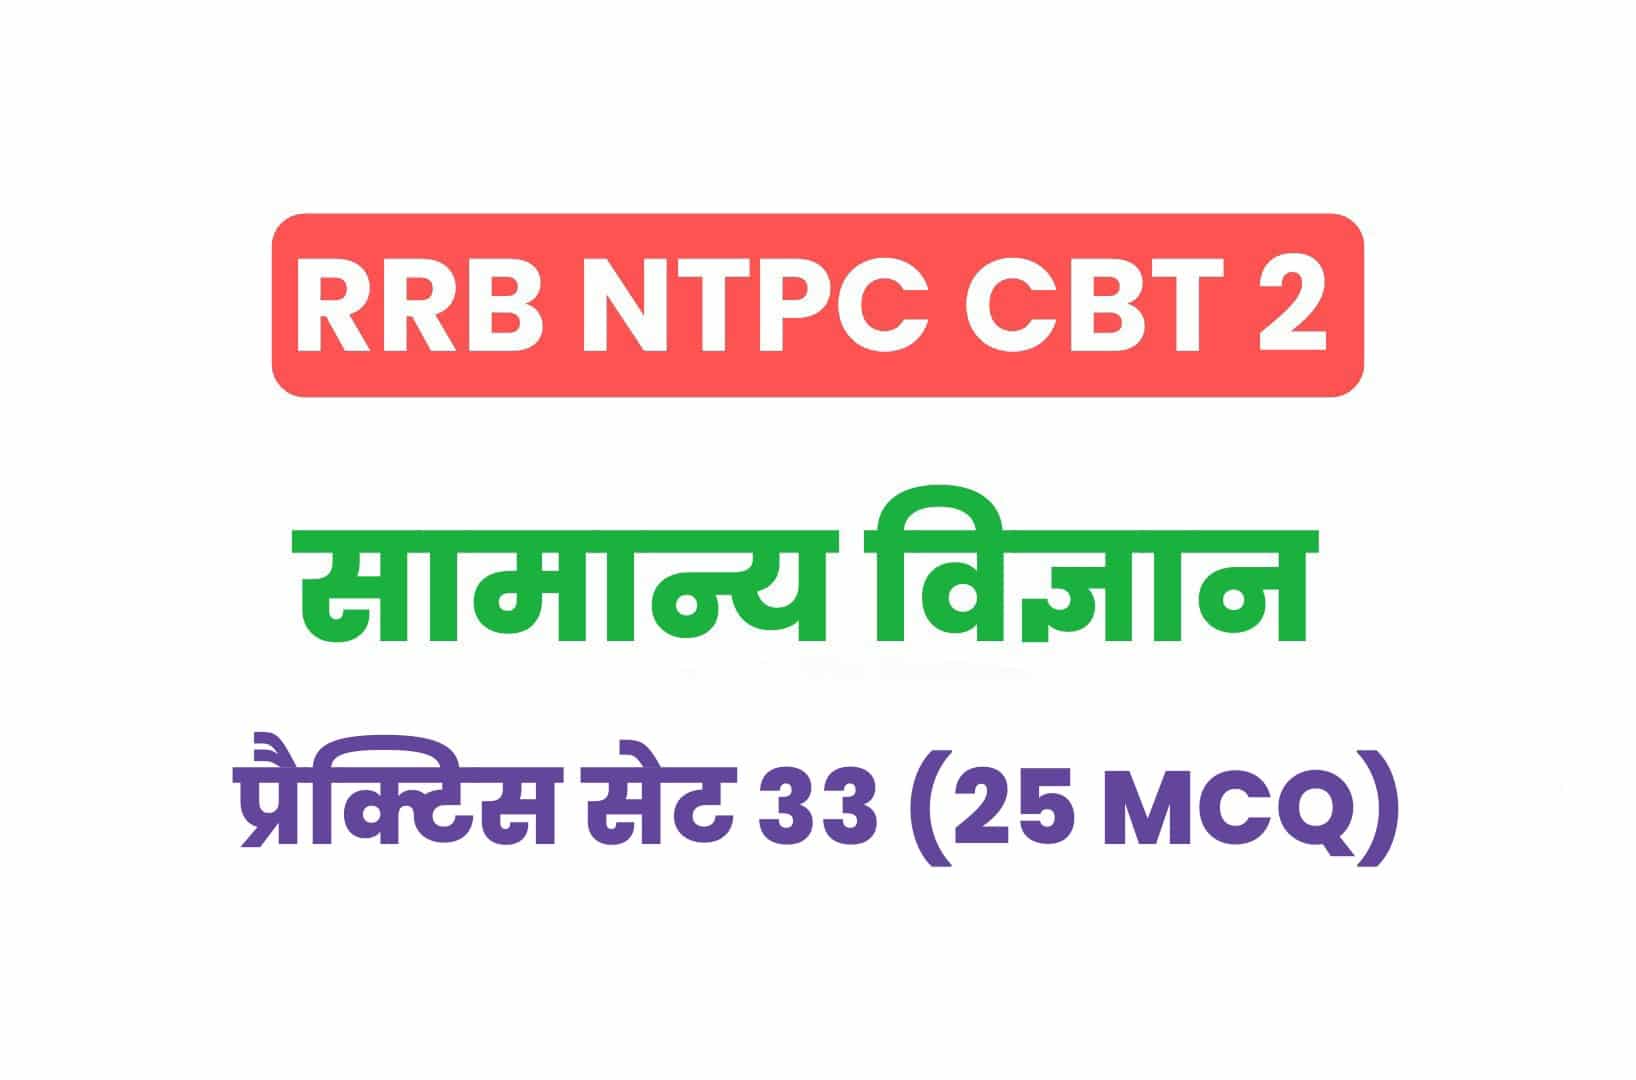 RRB NTPC CBT 2 Science प्रैक्टिस सेट 33: सामान्य विज्ञान के महत्वपूर्ण प्रश्नों का करें अध्ययन